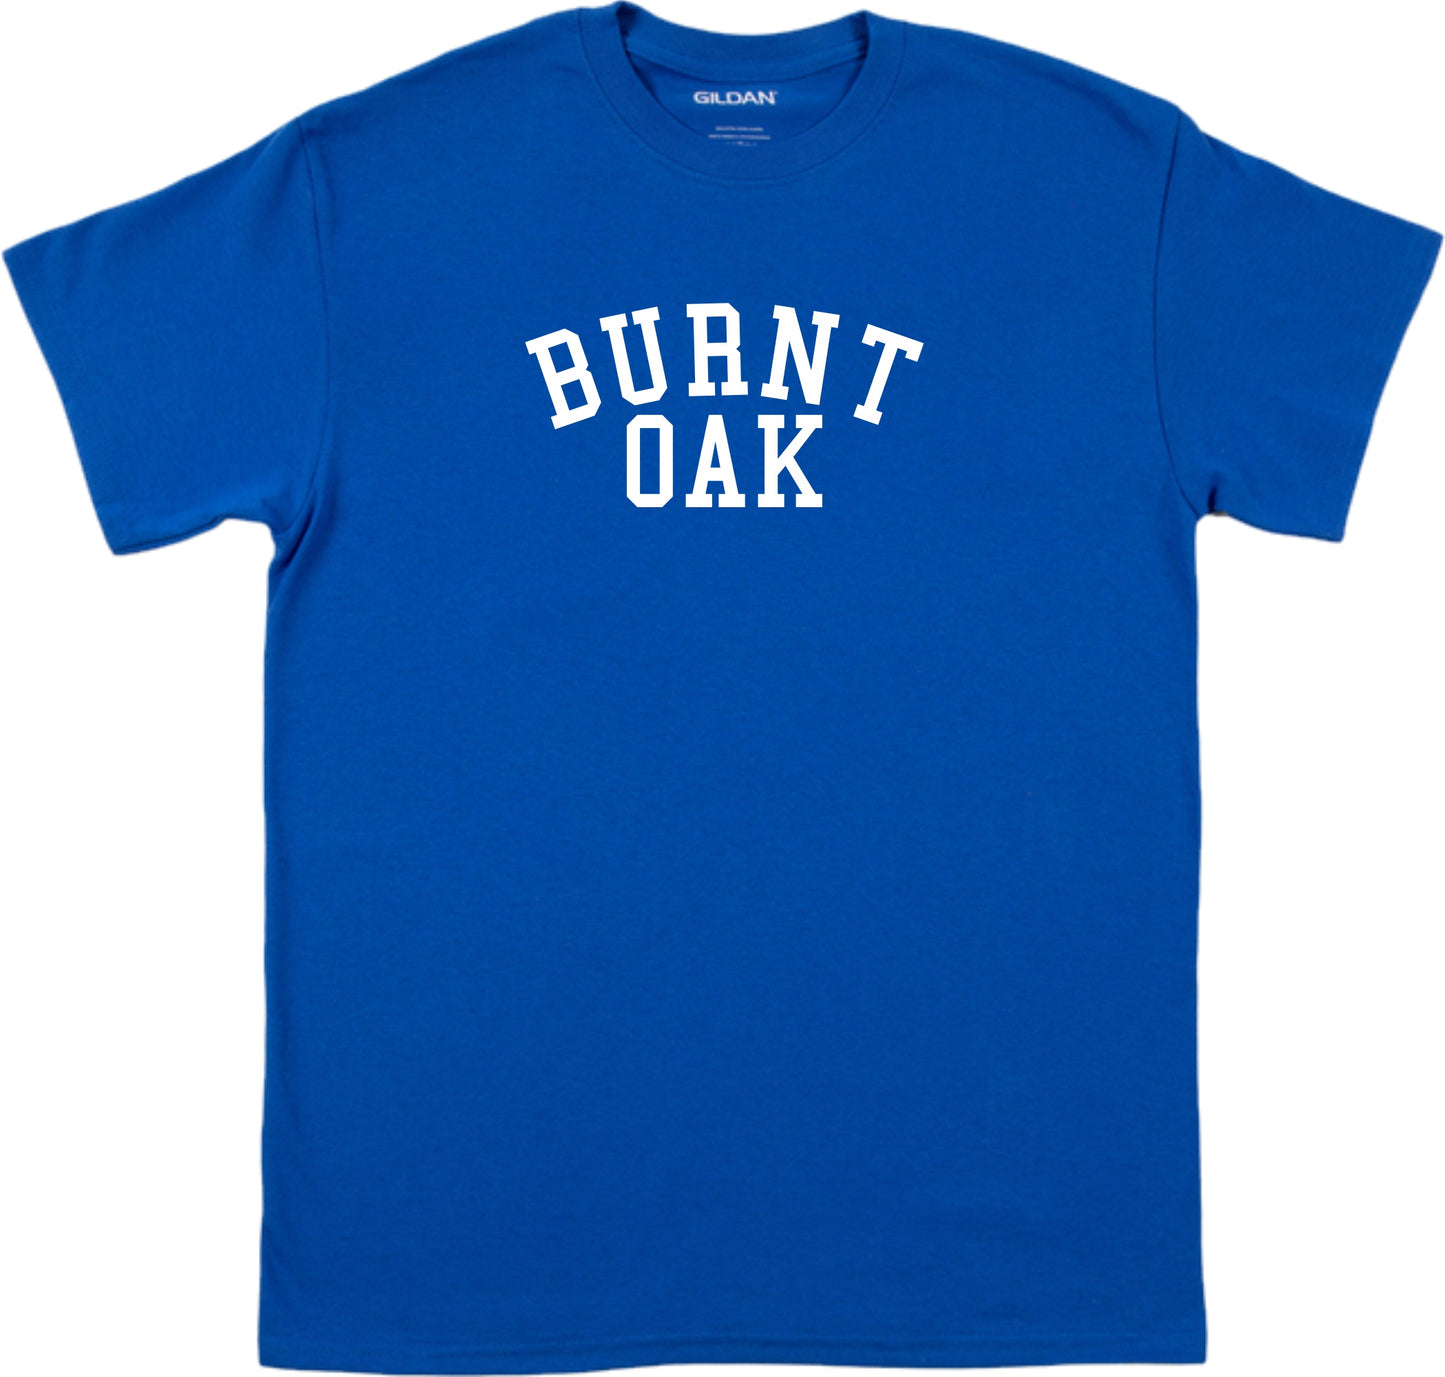 Burnt Oak, London Souvenir T-Shirt - Retro College Varsity Style, Various Colours